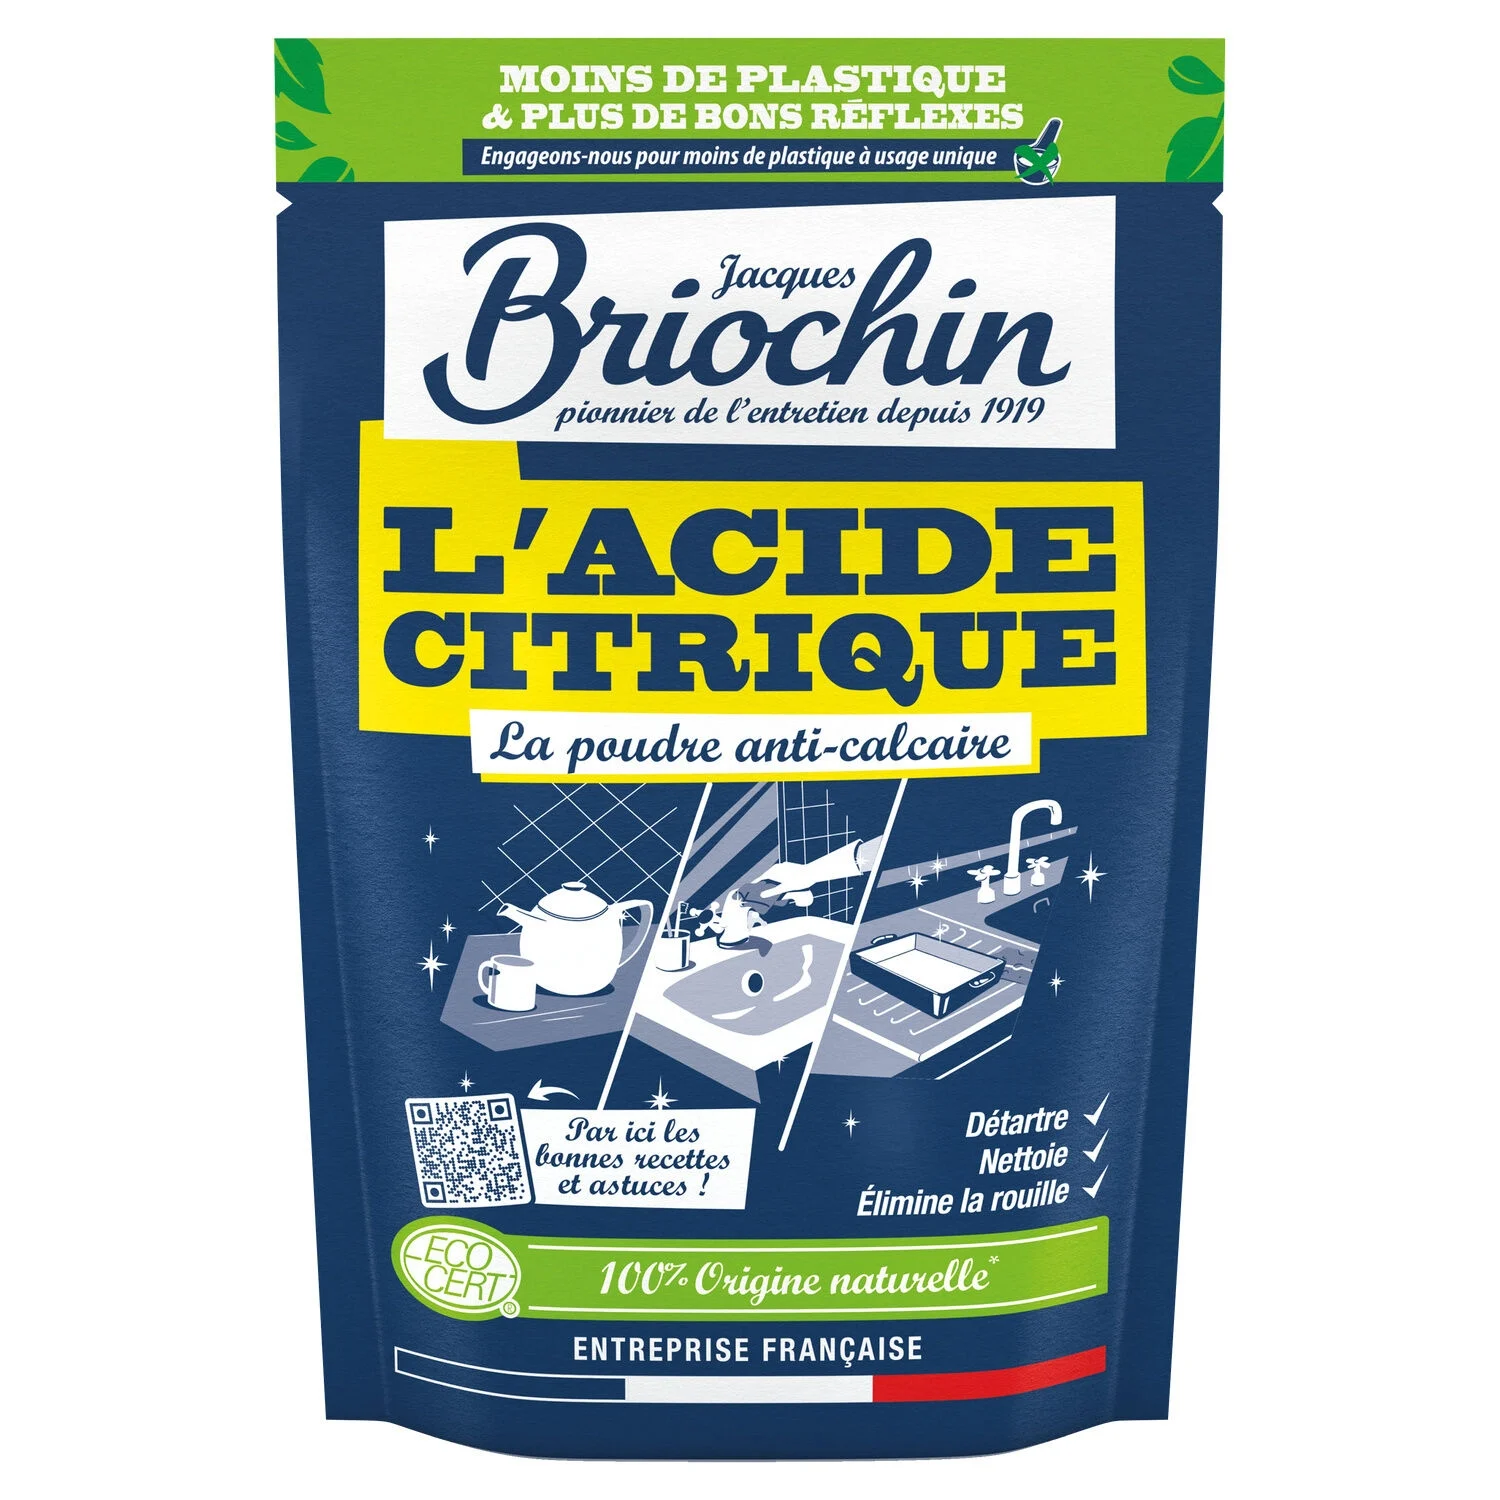 450g Acide Citrique Ecocert